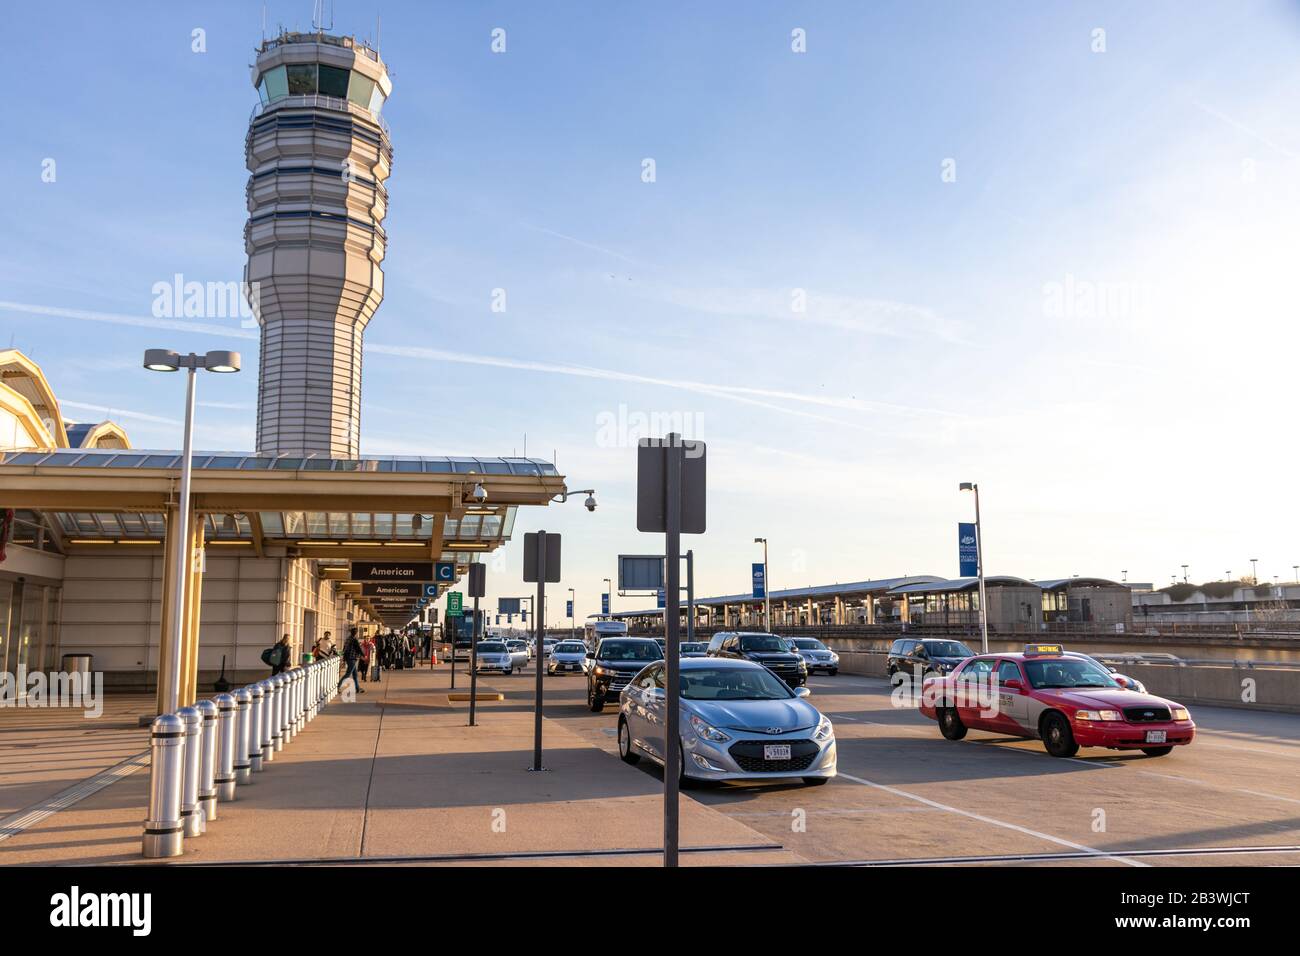 Le terminal B/C de l'aéroport national de Washington Ronald Reagan est un après-midi ensoleillé et animé avec la Tour de contrôle de la circulation aérienne vue en arrière-plan. Banque D'Images